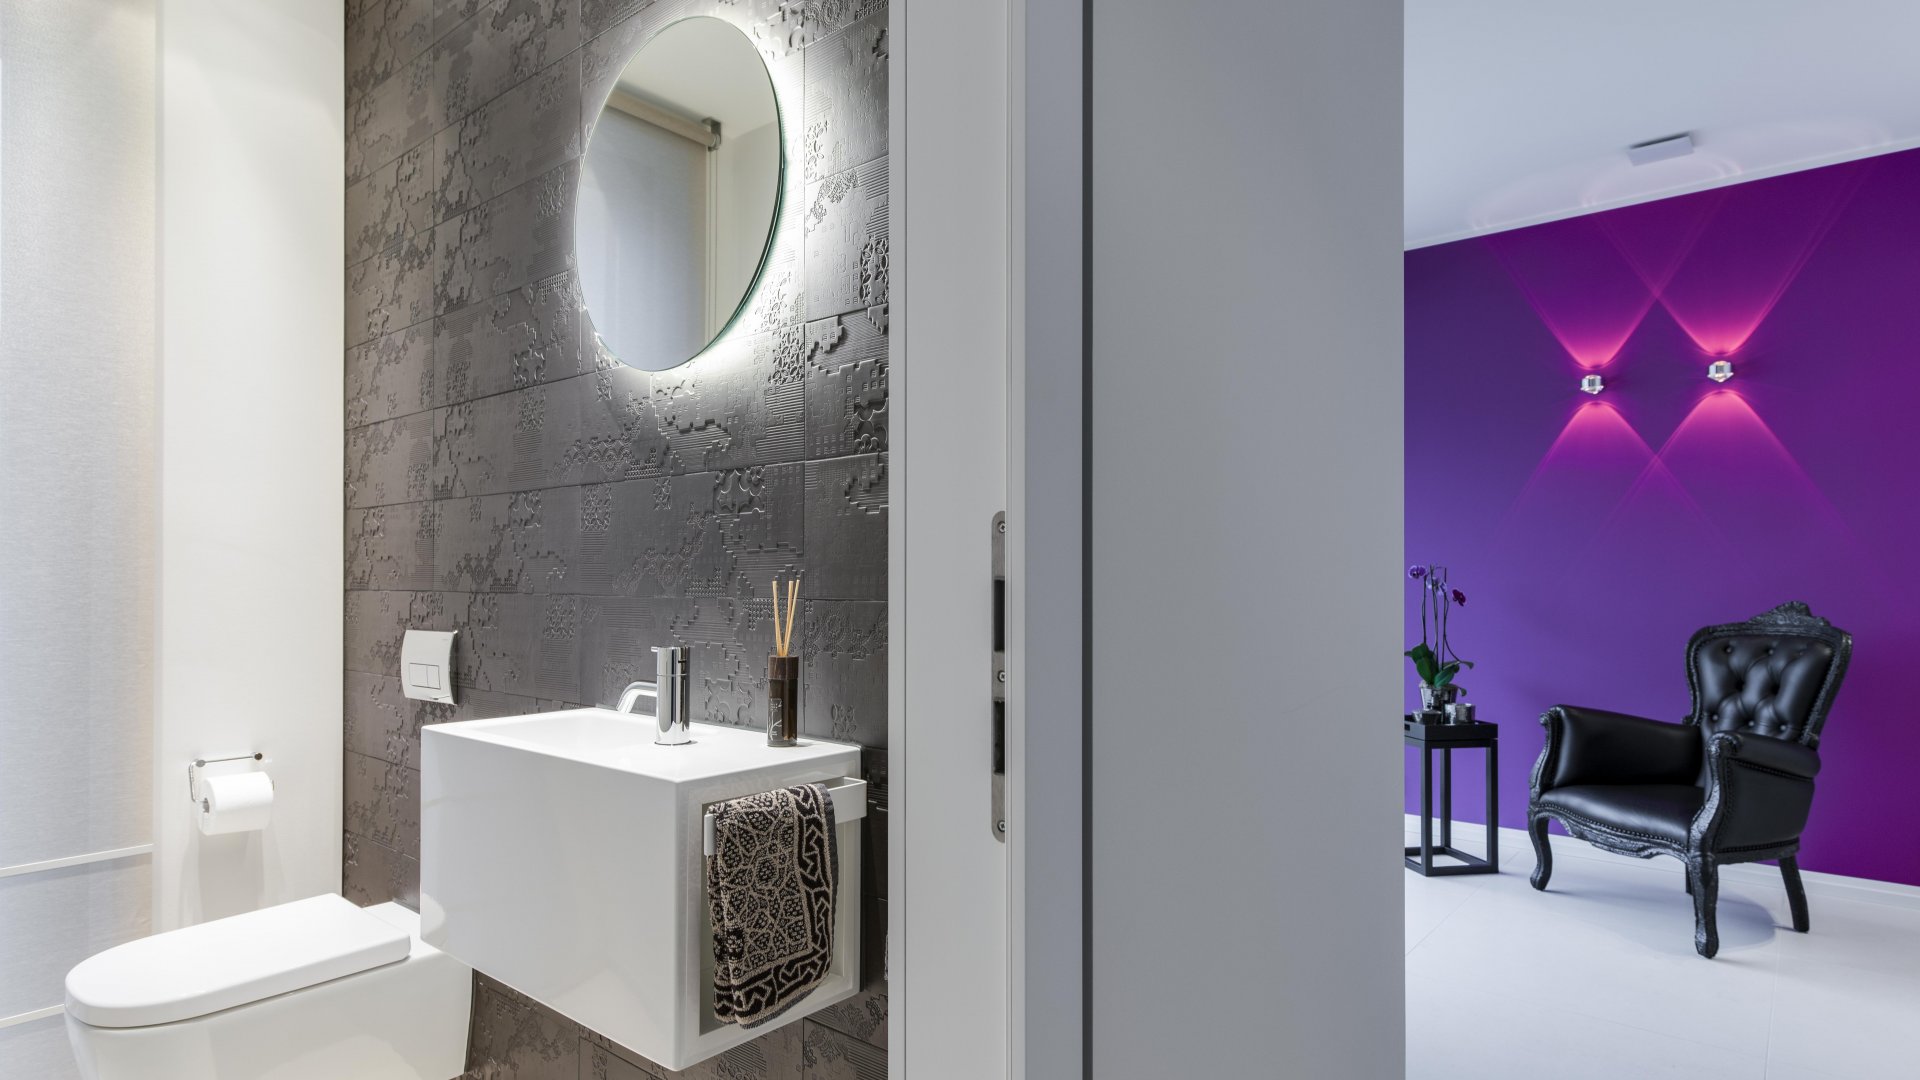 Schwarz-weißes Gäste-WC mit farbigem Flur, Wandspiegel run hinterbeleuchtet, indirektes Licht, Handtuchhalter